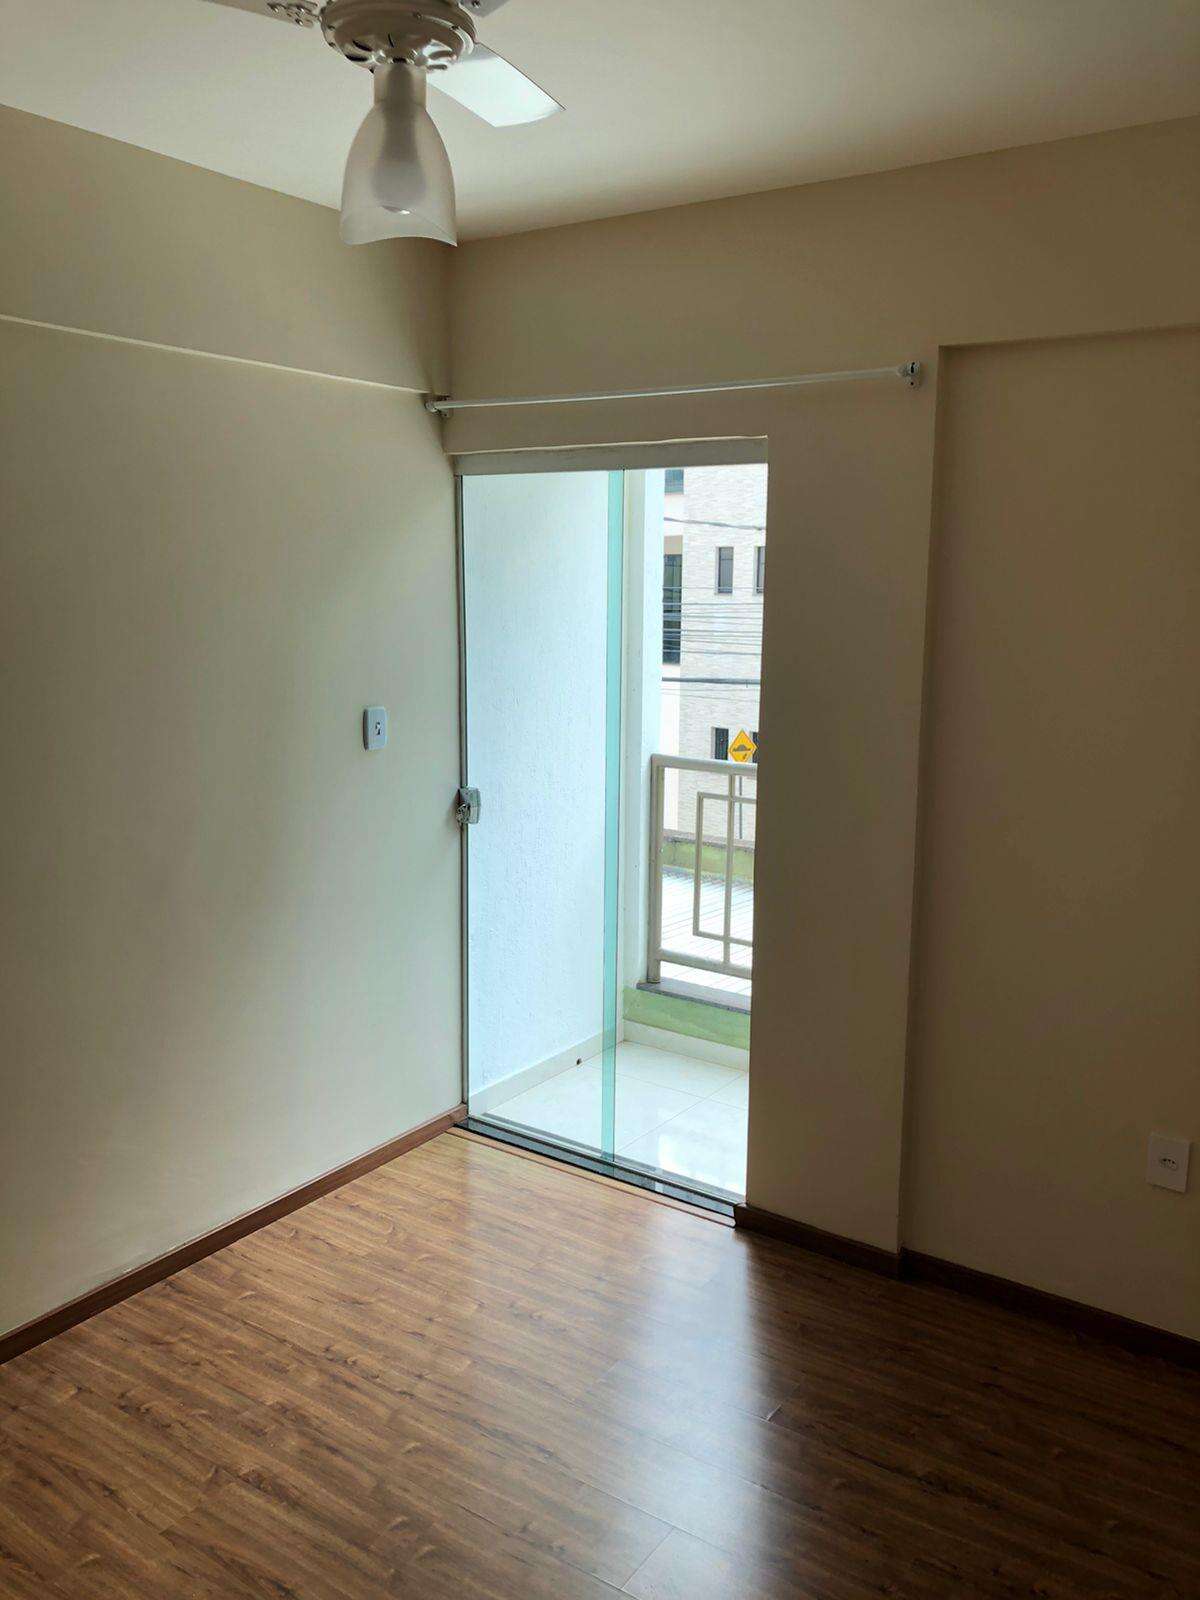 Apartamento 2 quartos à venda no Esplanada: c02e2ac1-e-whatsapp-image-2021-10-06-at-13.33.19-1.jpeg